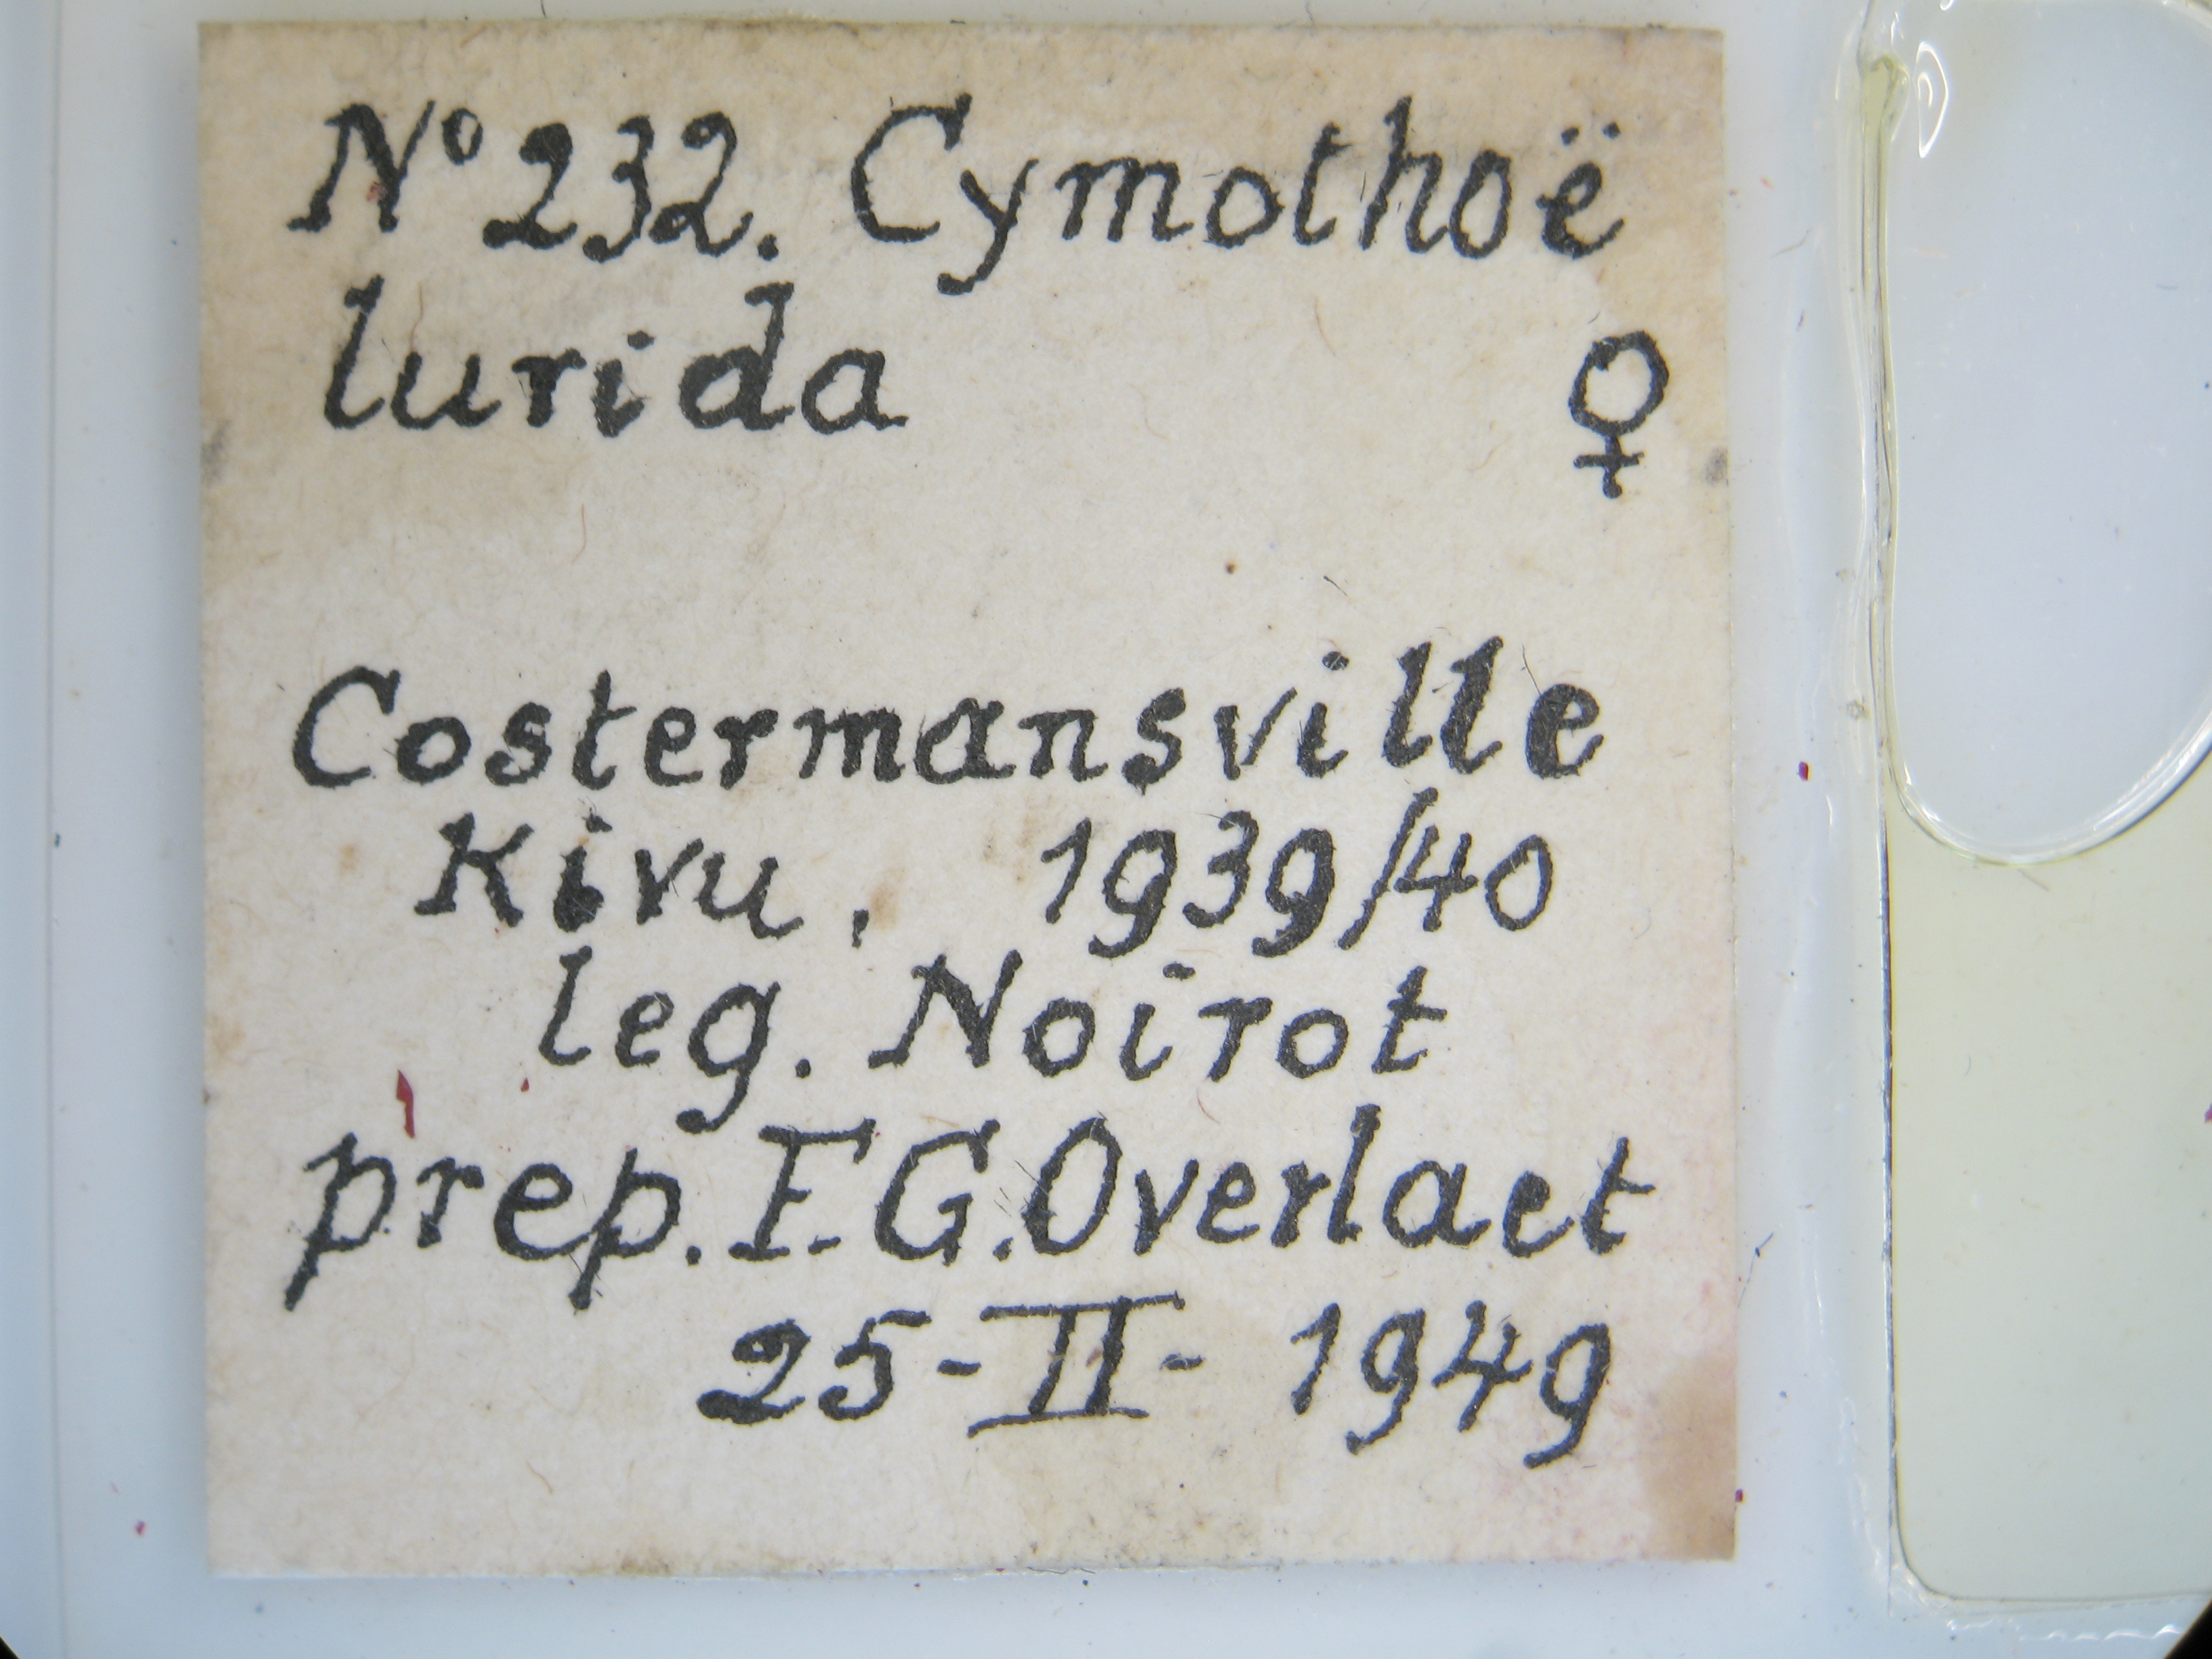 Cymothoe lurida tristis pt F G Lb.jpg